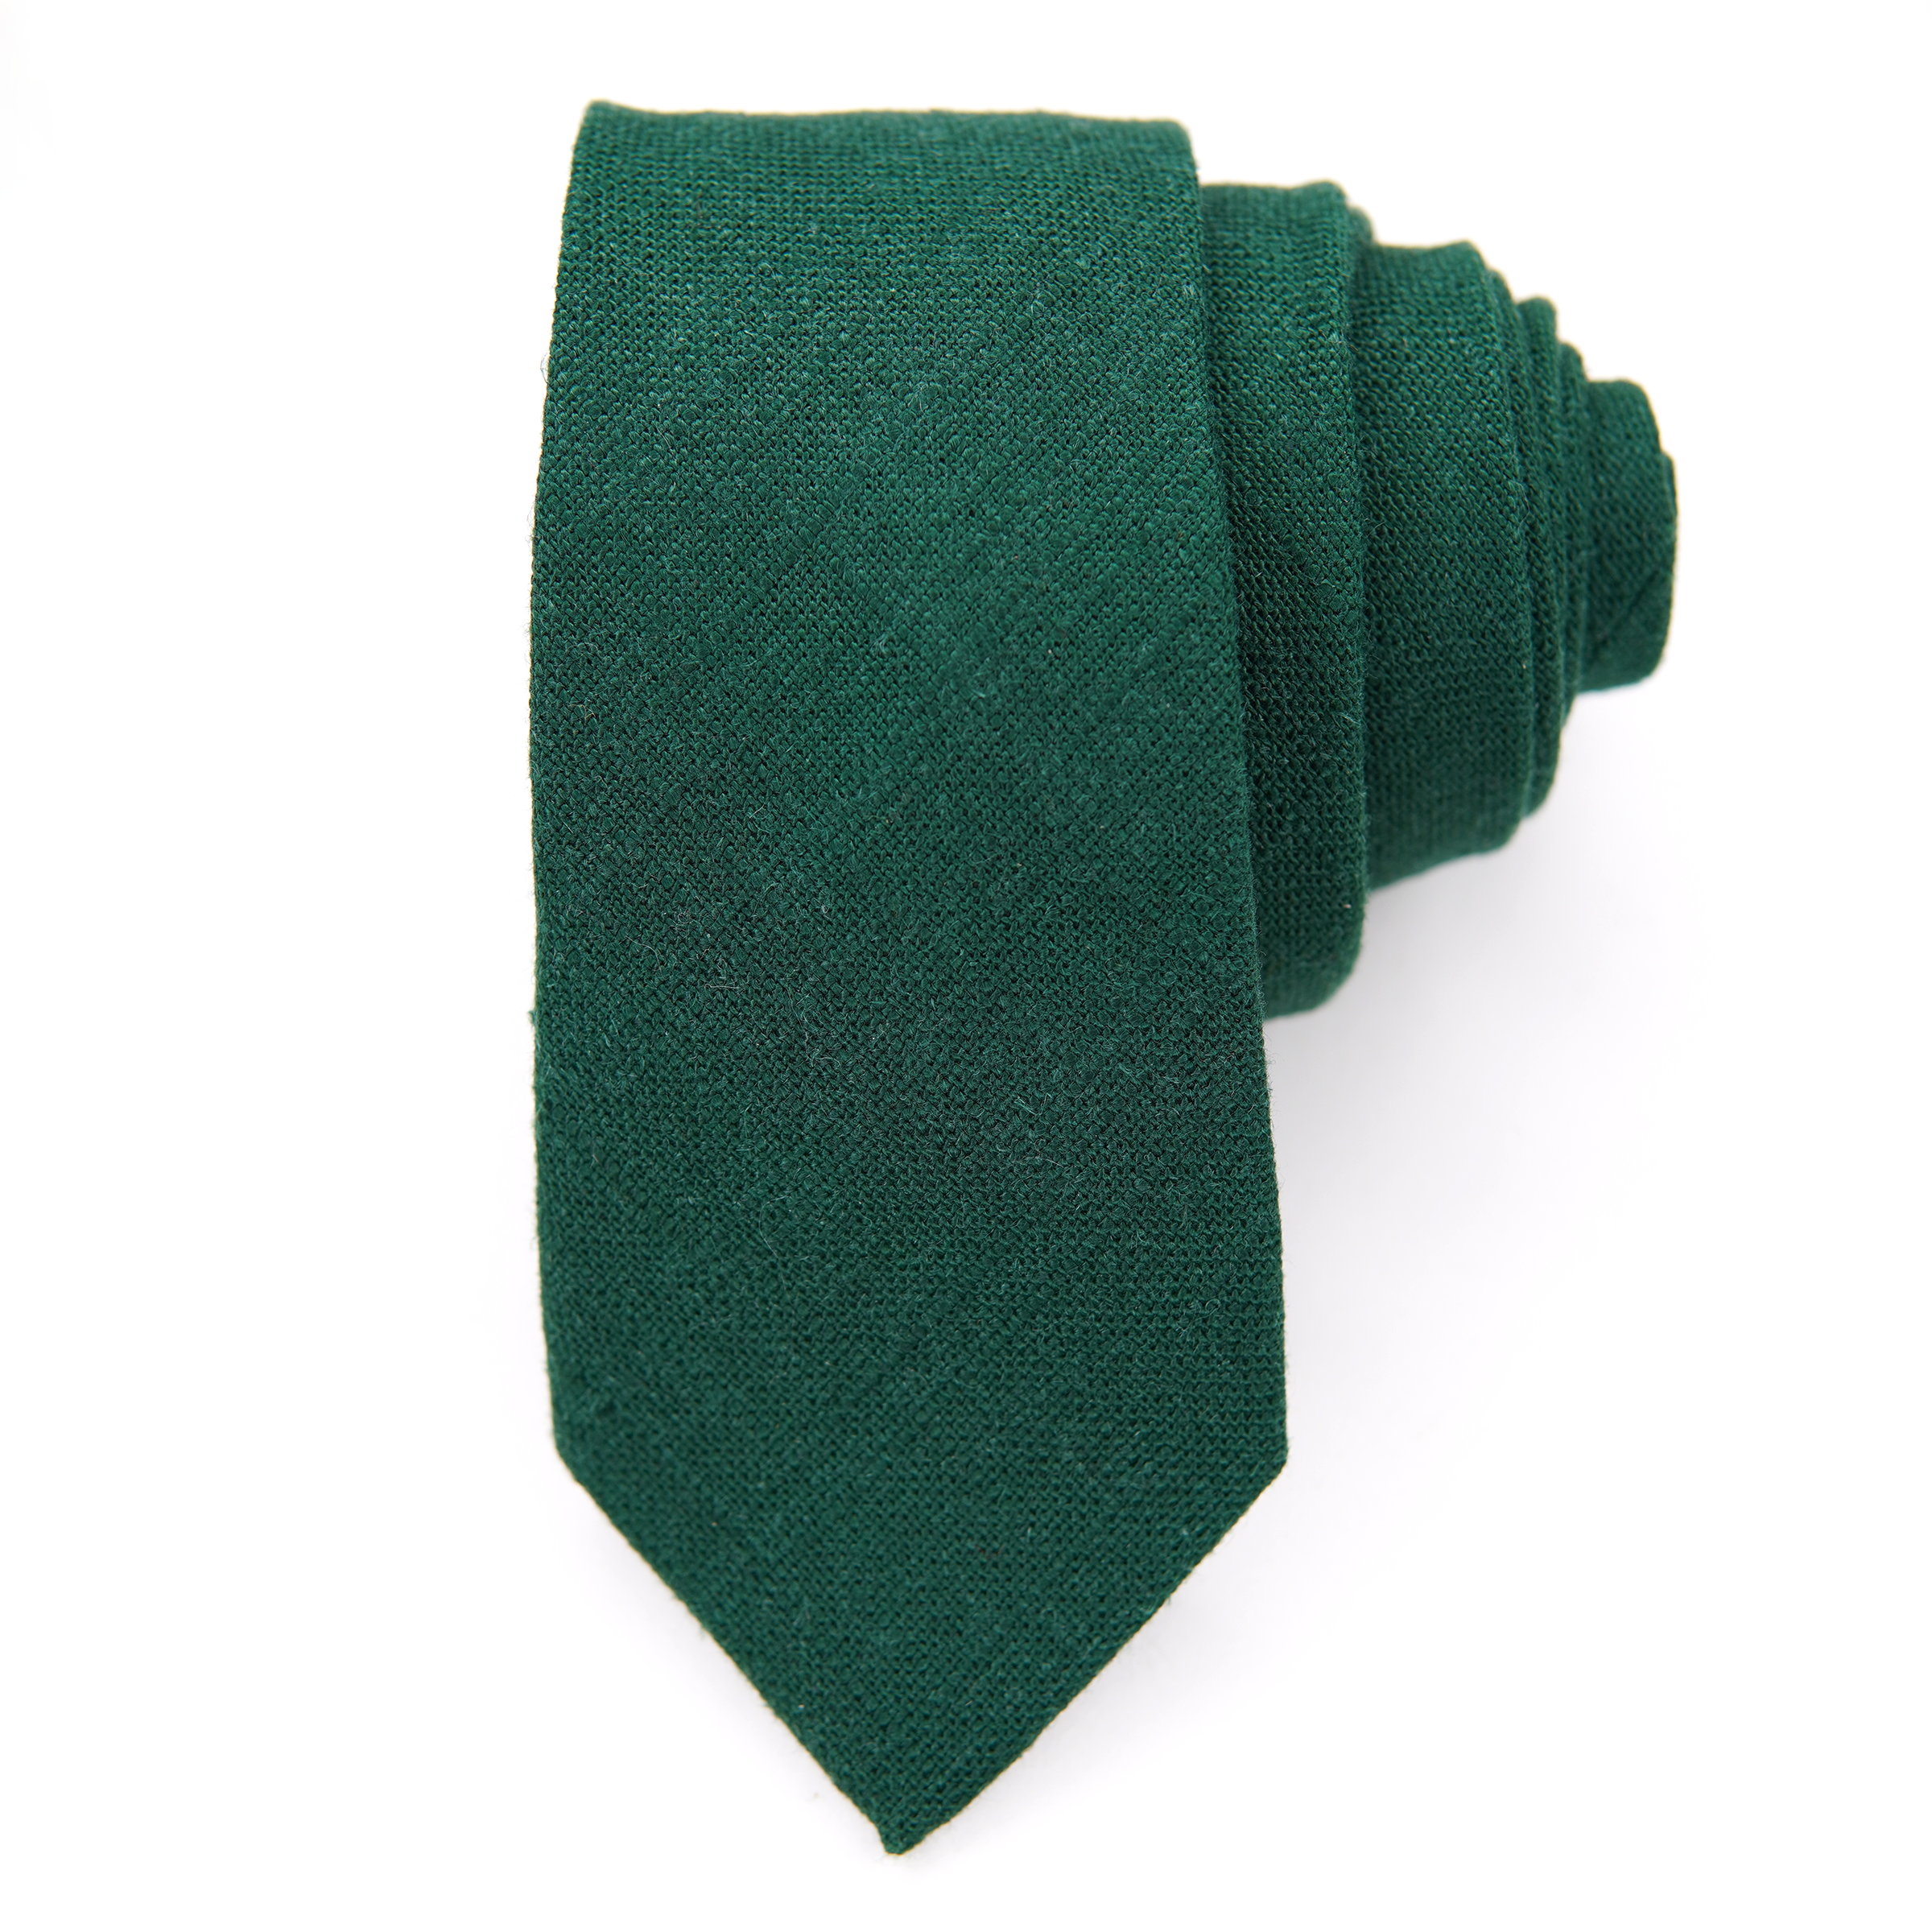 Evergreen Men's Tie